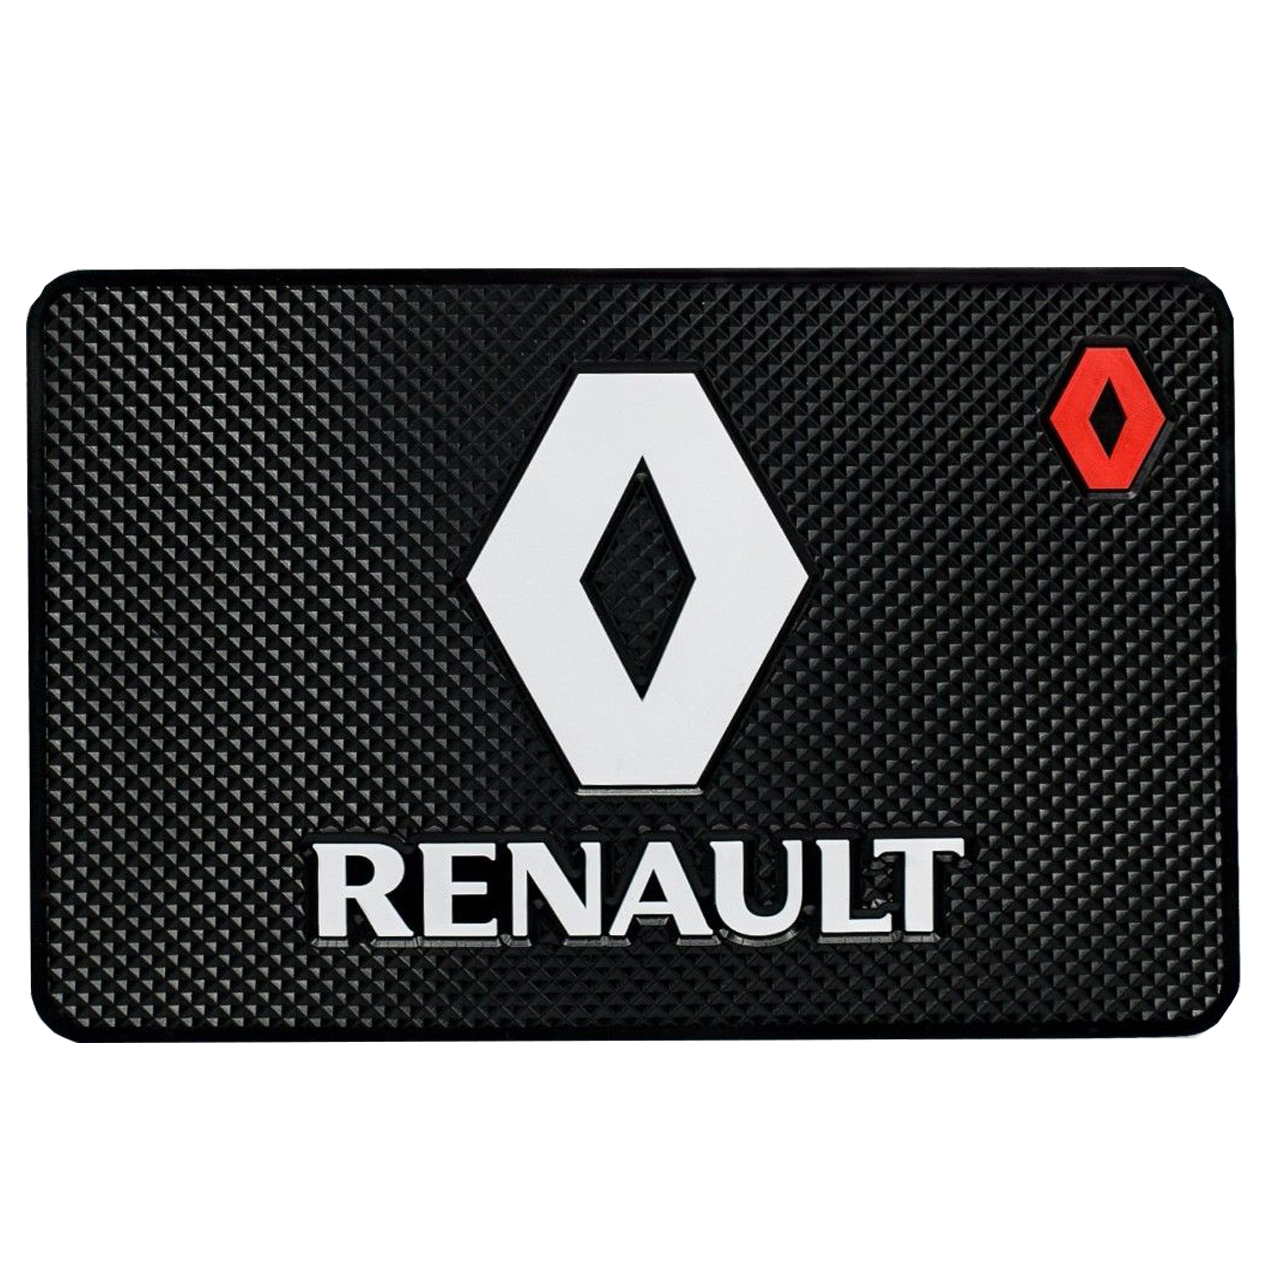 پد نگهدارنده اشیاء داخل خودرو طرح Renault مدل RS01